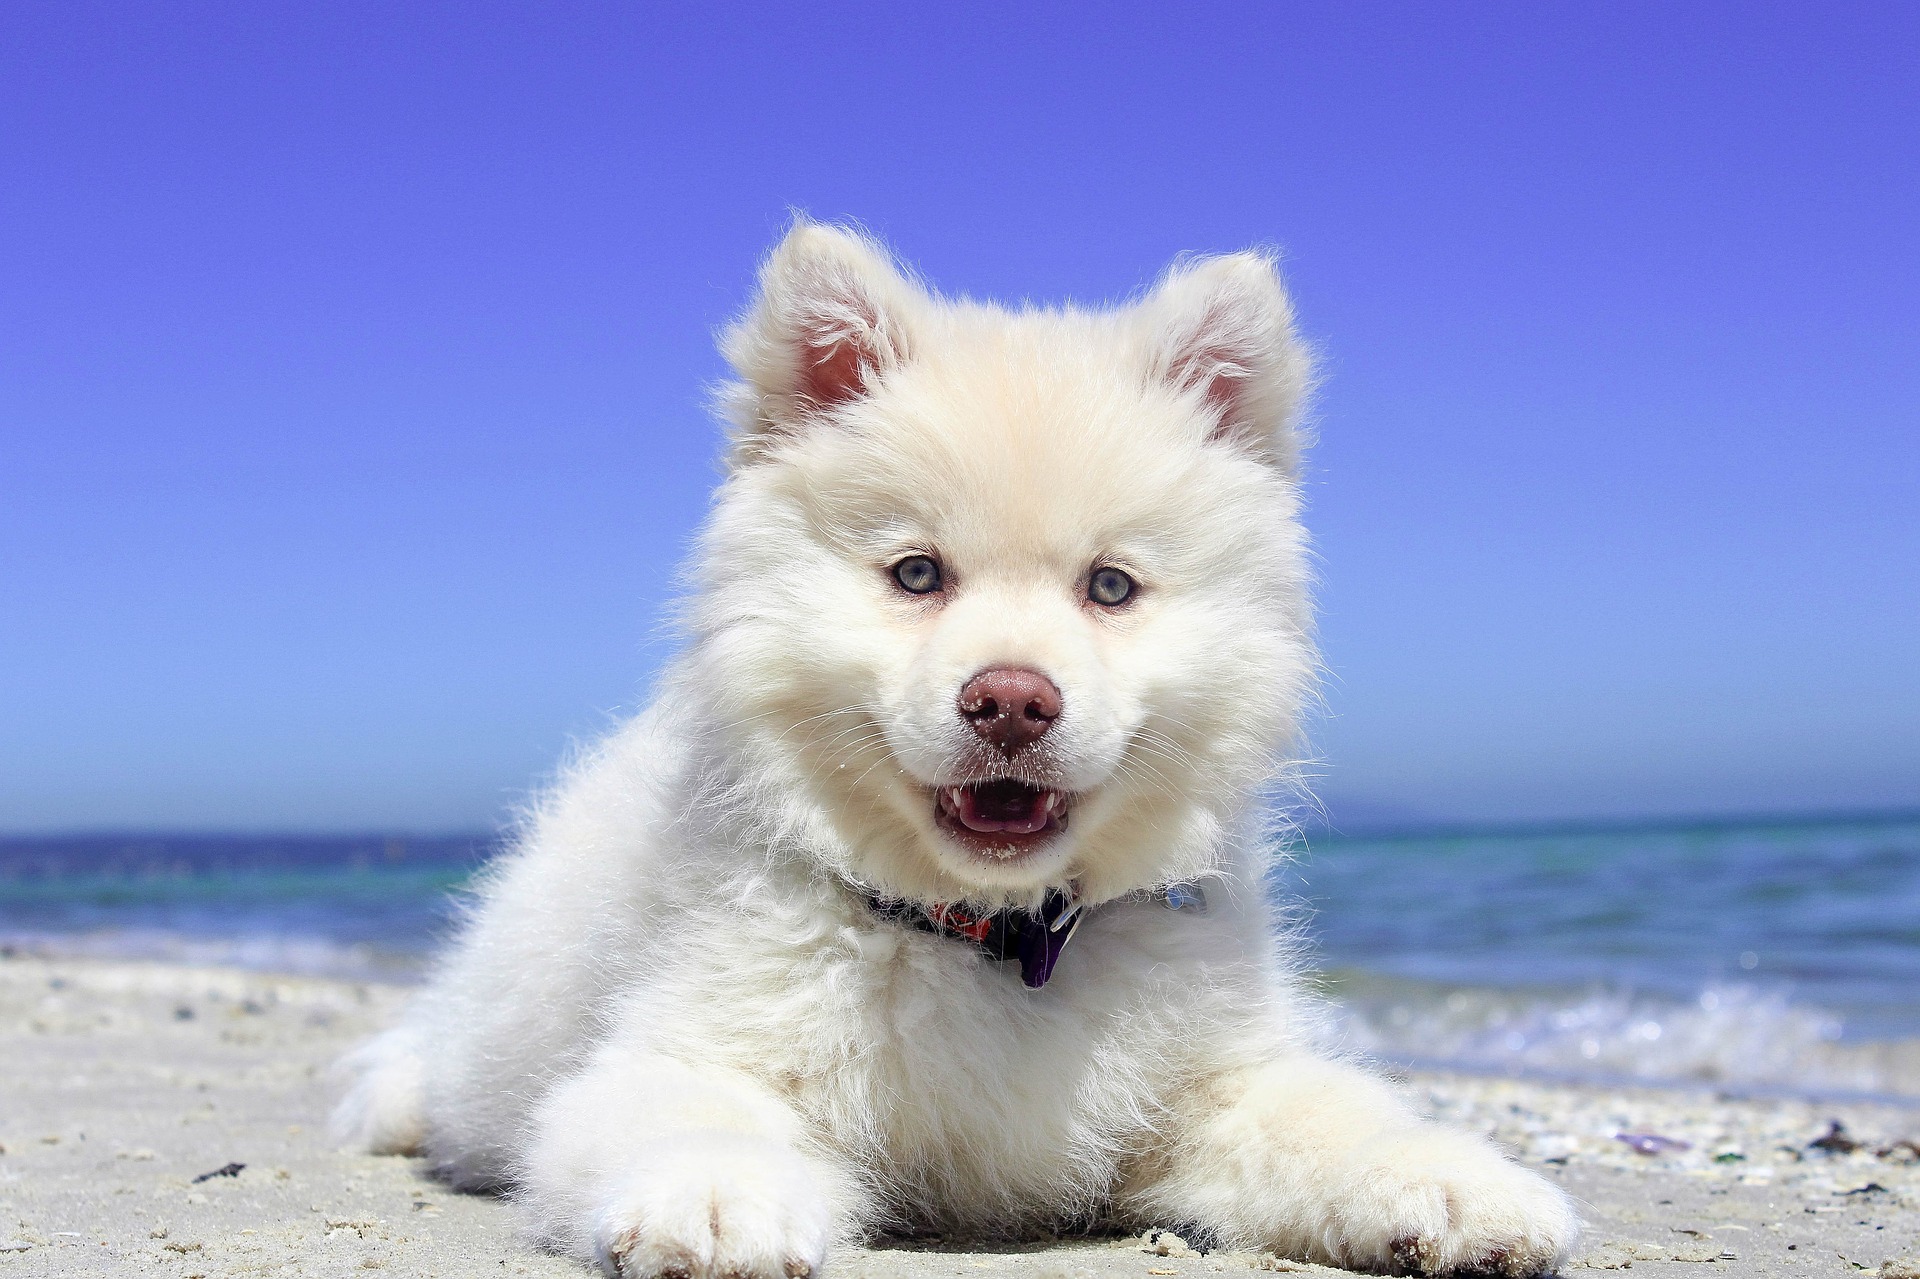 Když se chystáte na dovolenou se psem, měli byste mu připravit přepravní box, očkovat ho a zajistit jeho bezpečnou cestu.